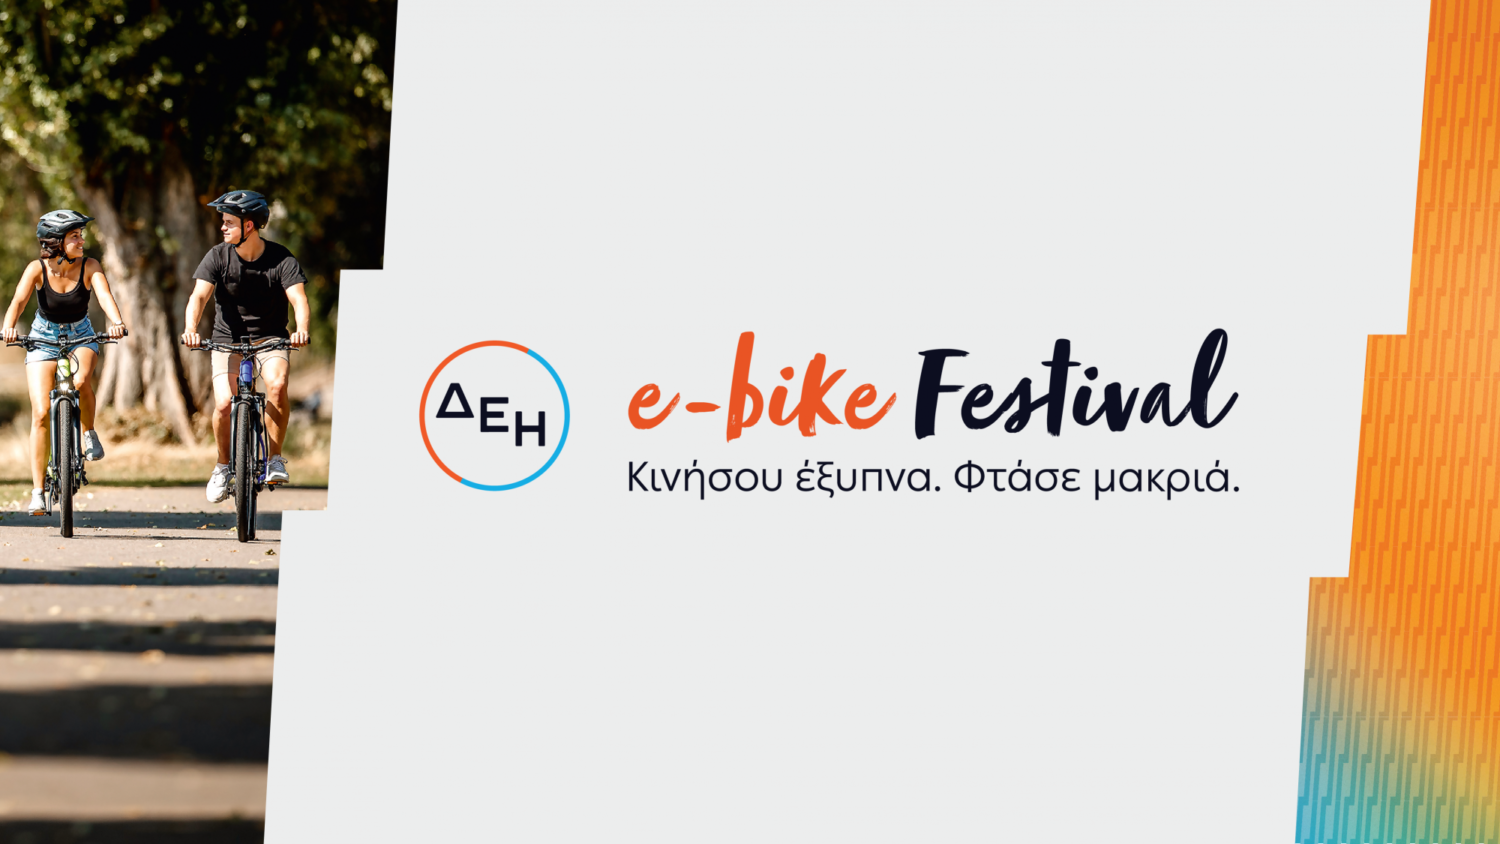 ΔΕΗ e-bike Festival